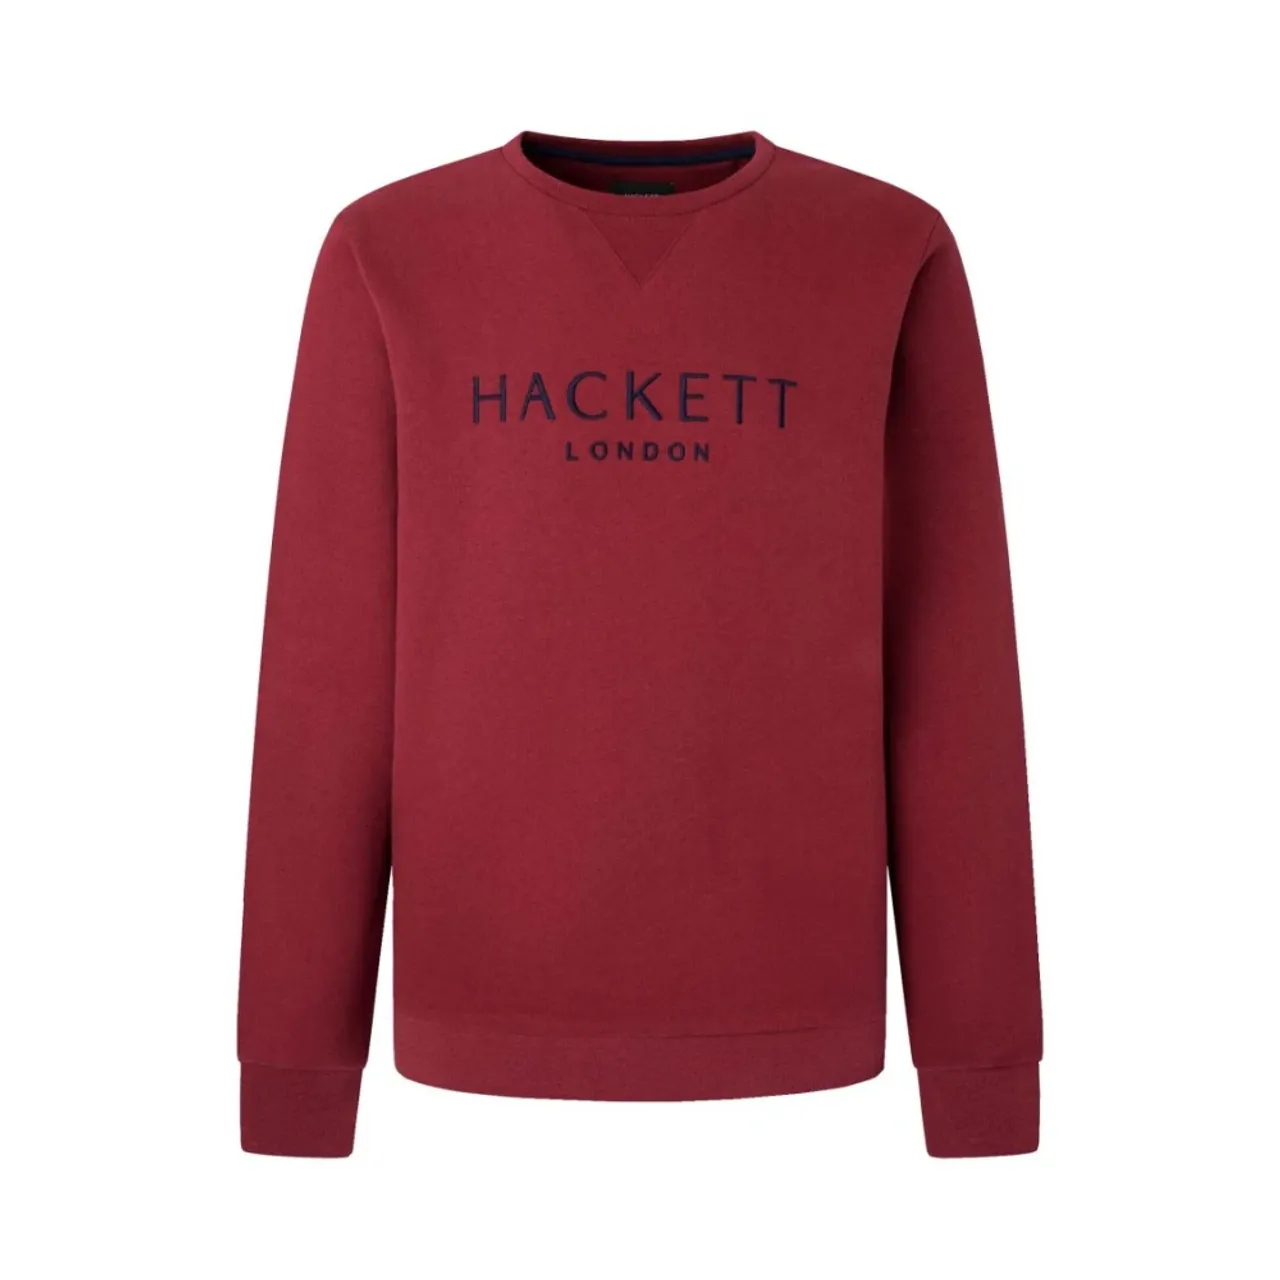 Hackett - Sweatshirts & Hoodies 